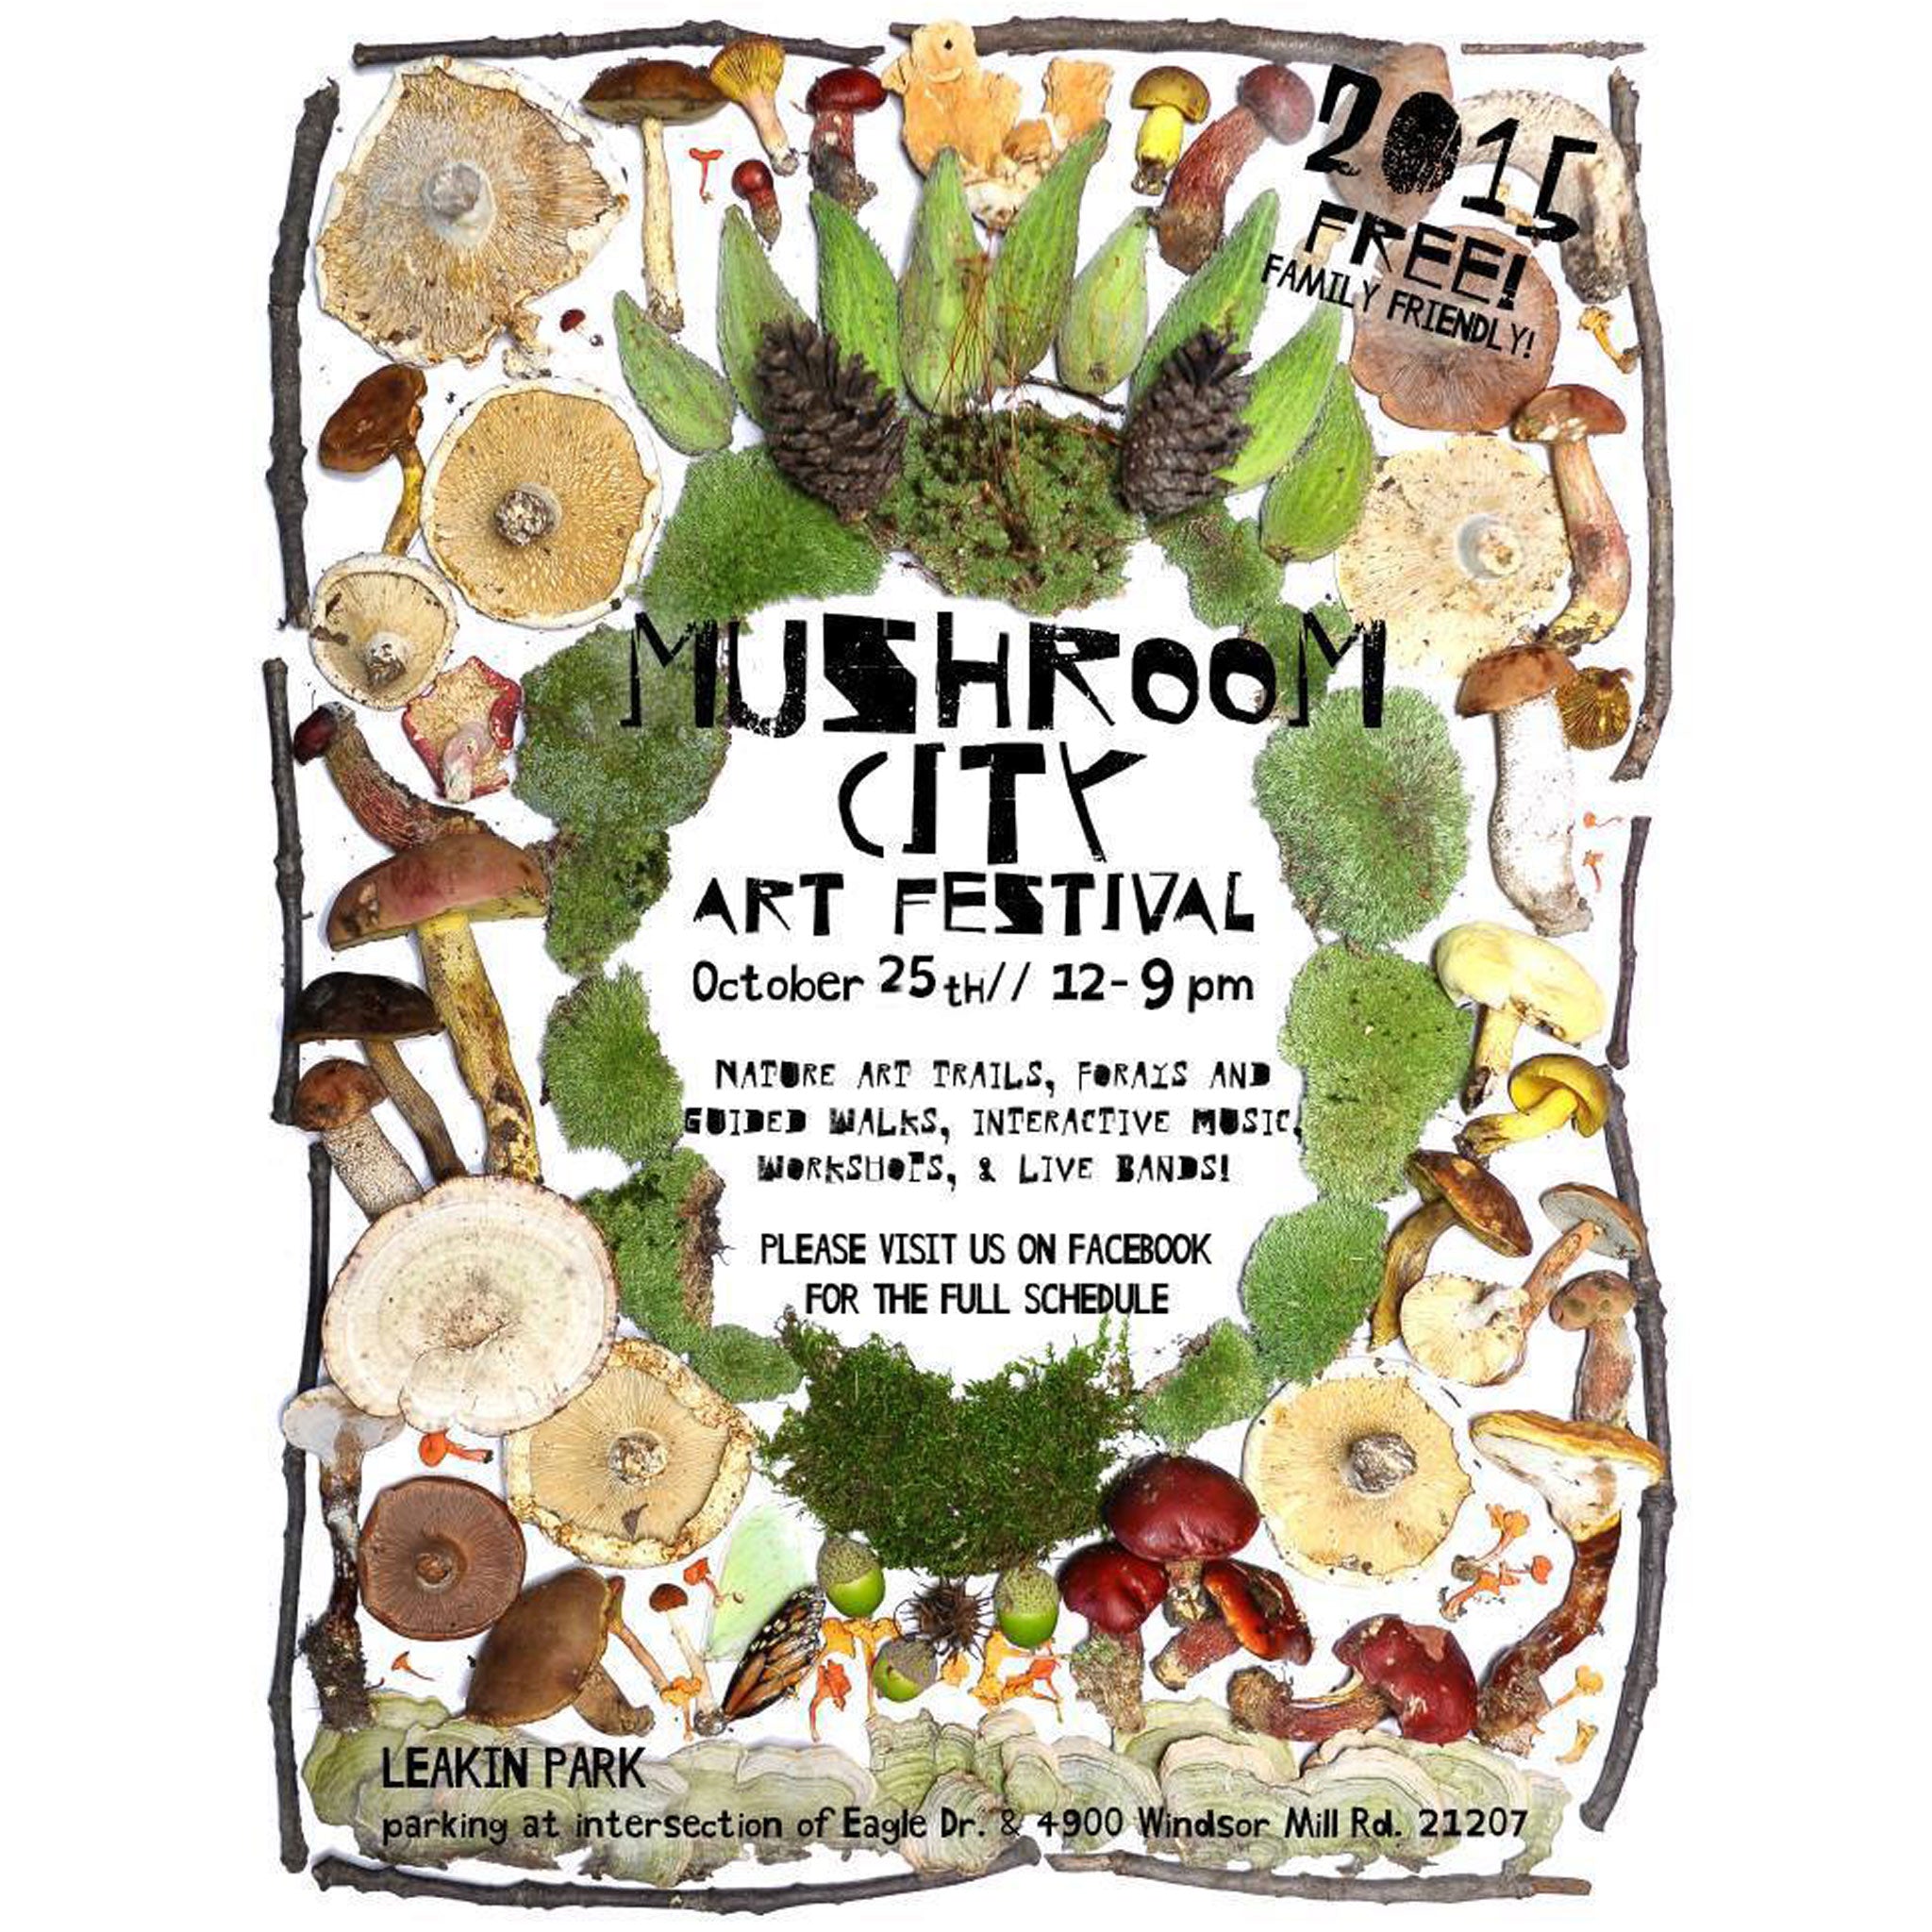 Mushroom City Art Festival 2015